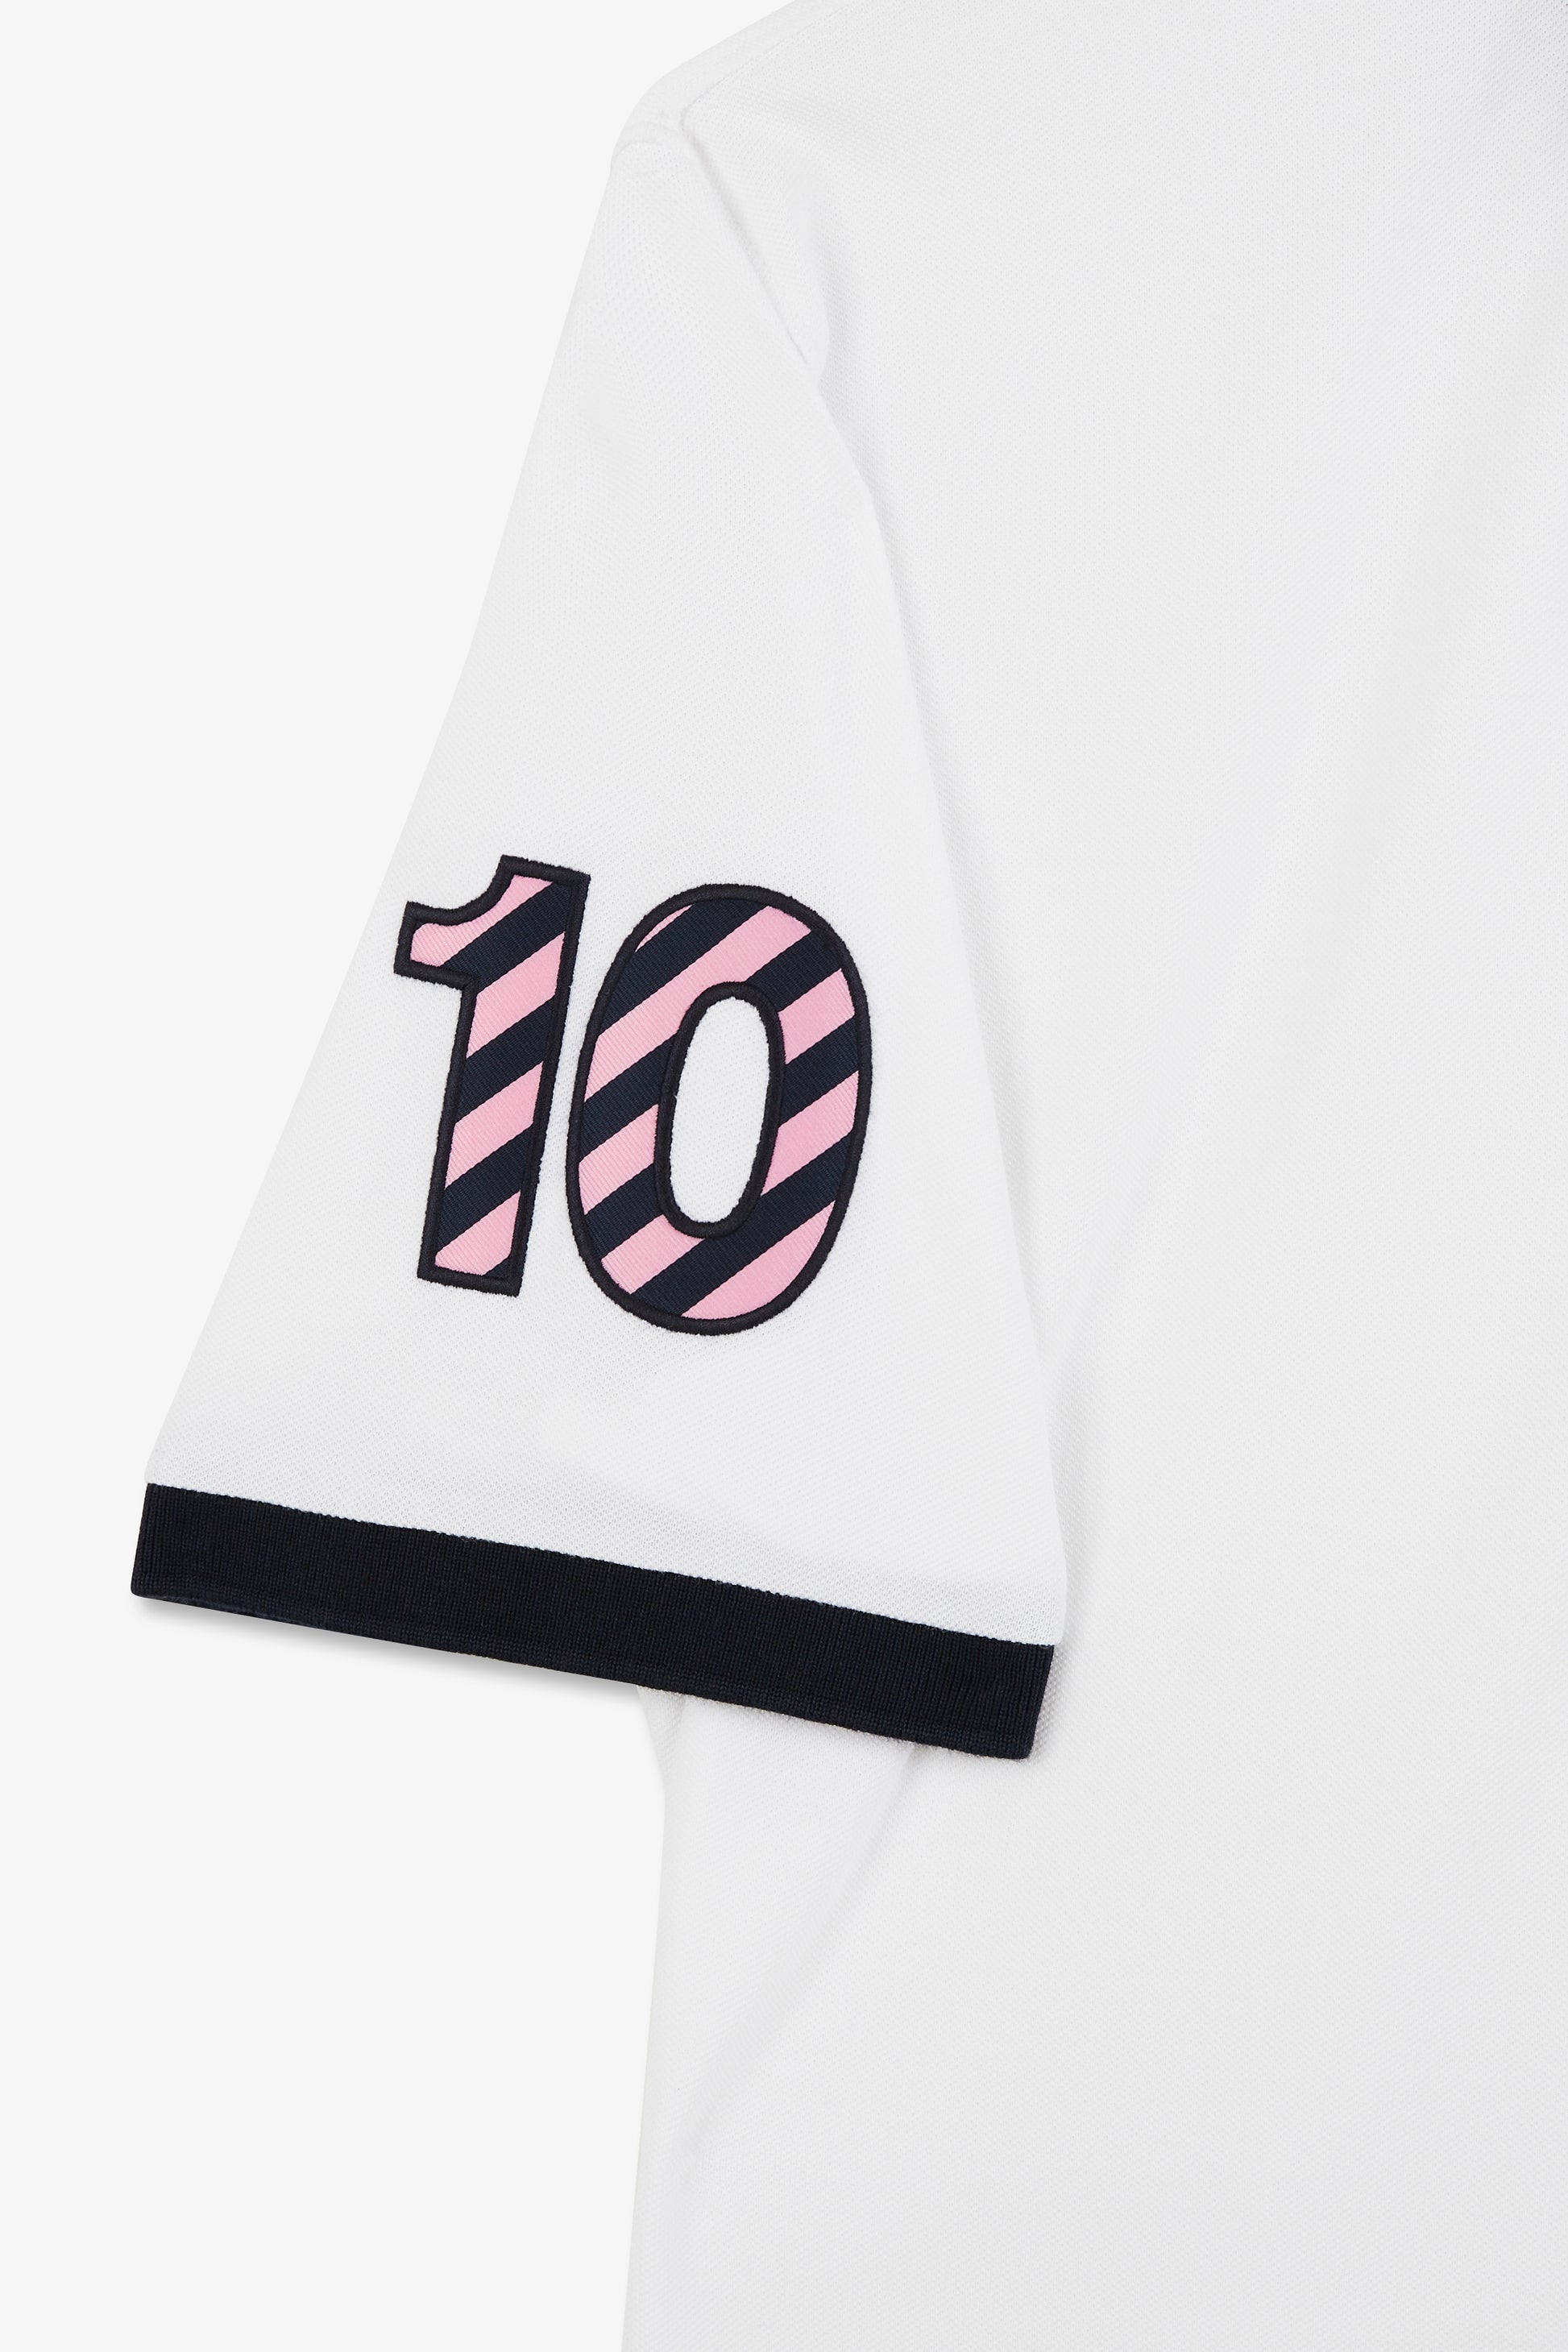 Polo blanc à manches courtes numéro 10